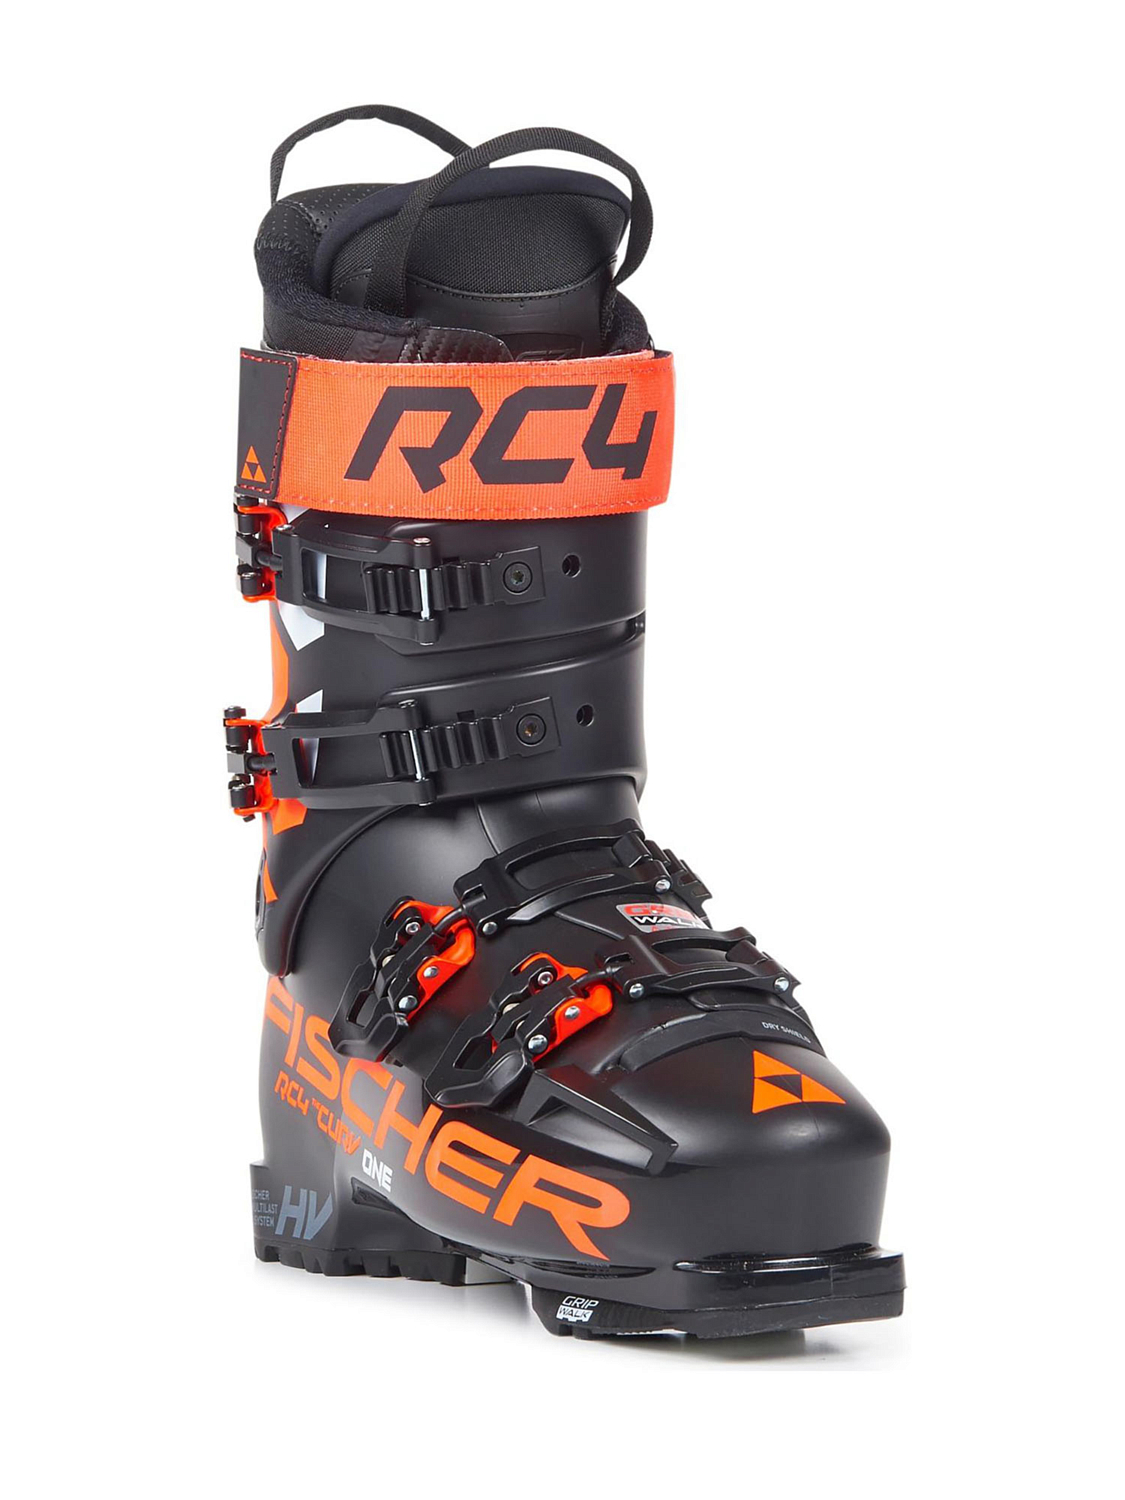 Горнолыжные ботинки FISCHER Rc4 The Curv One 120 Vacuum Walk Black